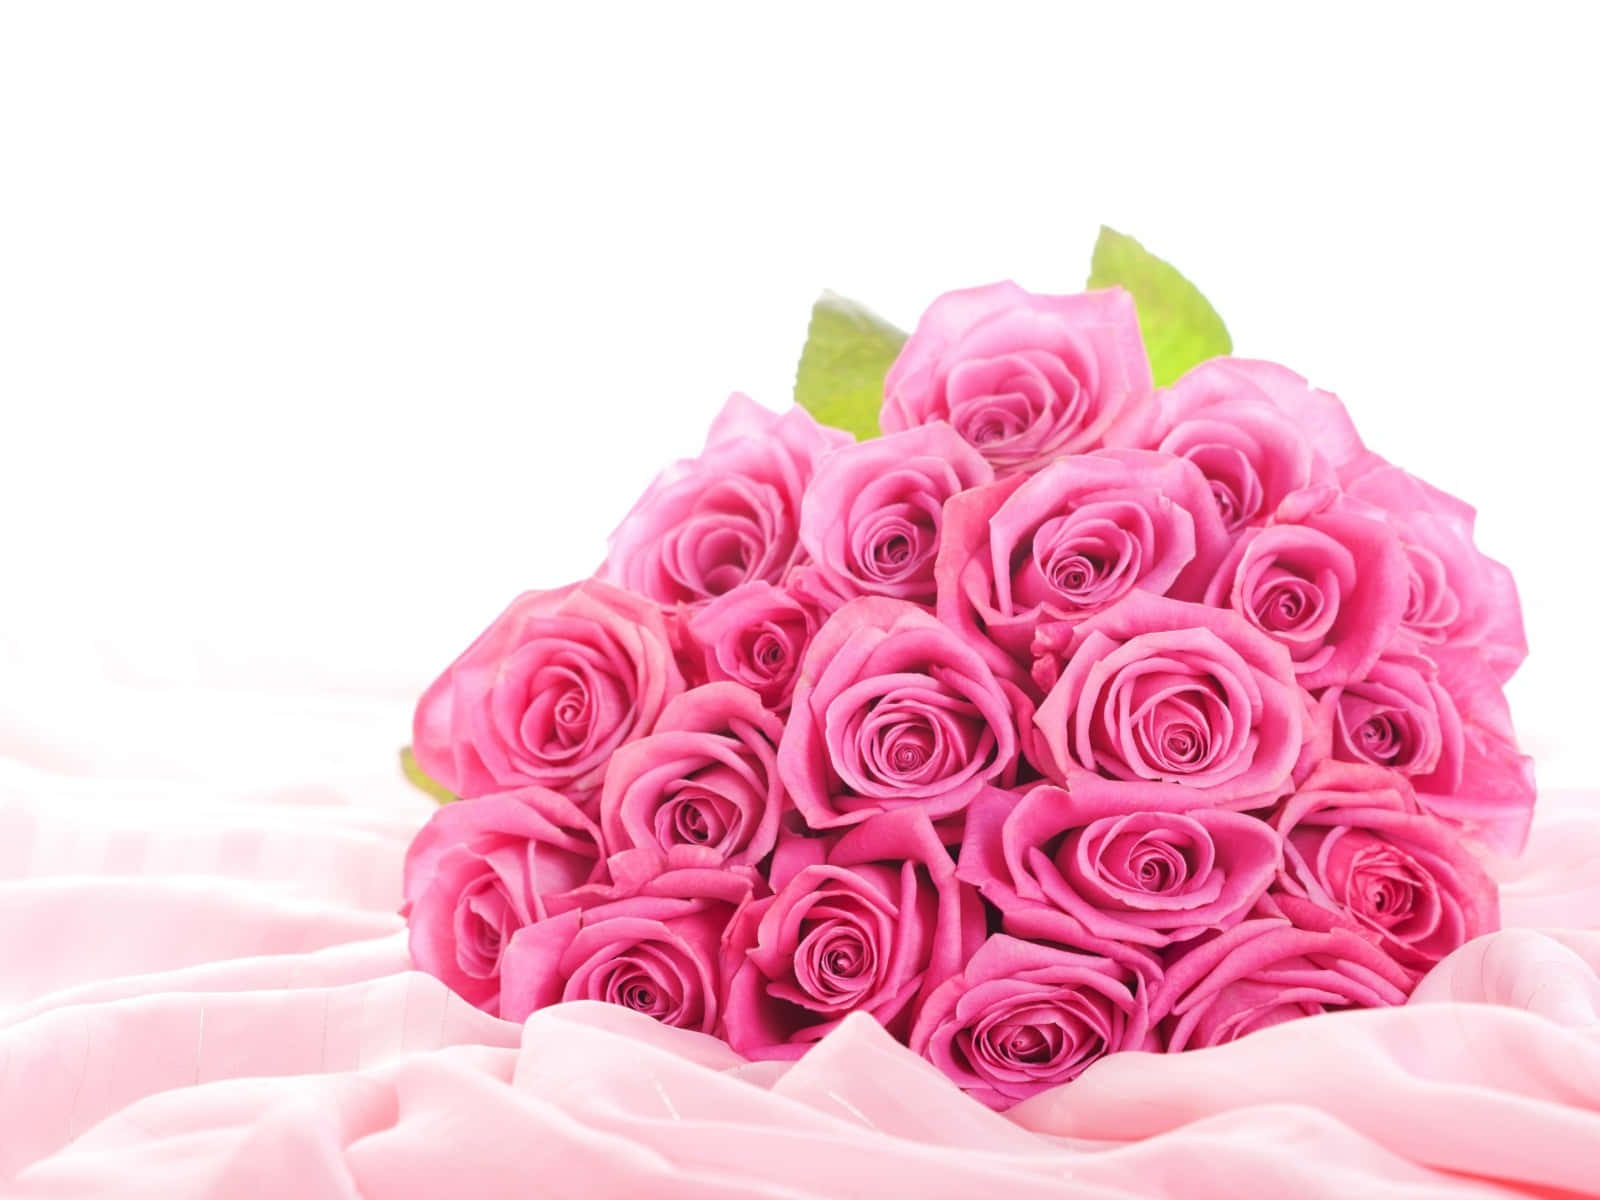 Eineleuchtend Rosa Rose, Ein Symbol Für Liebe, Freude Und Schönheit